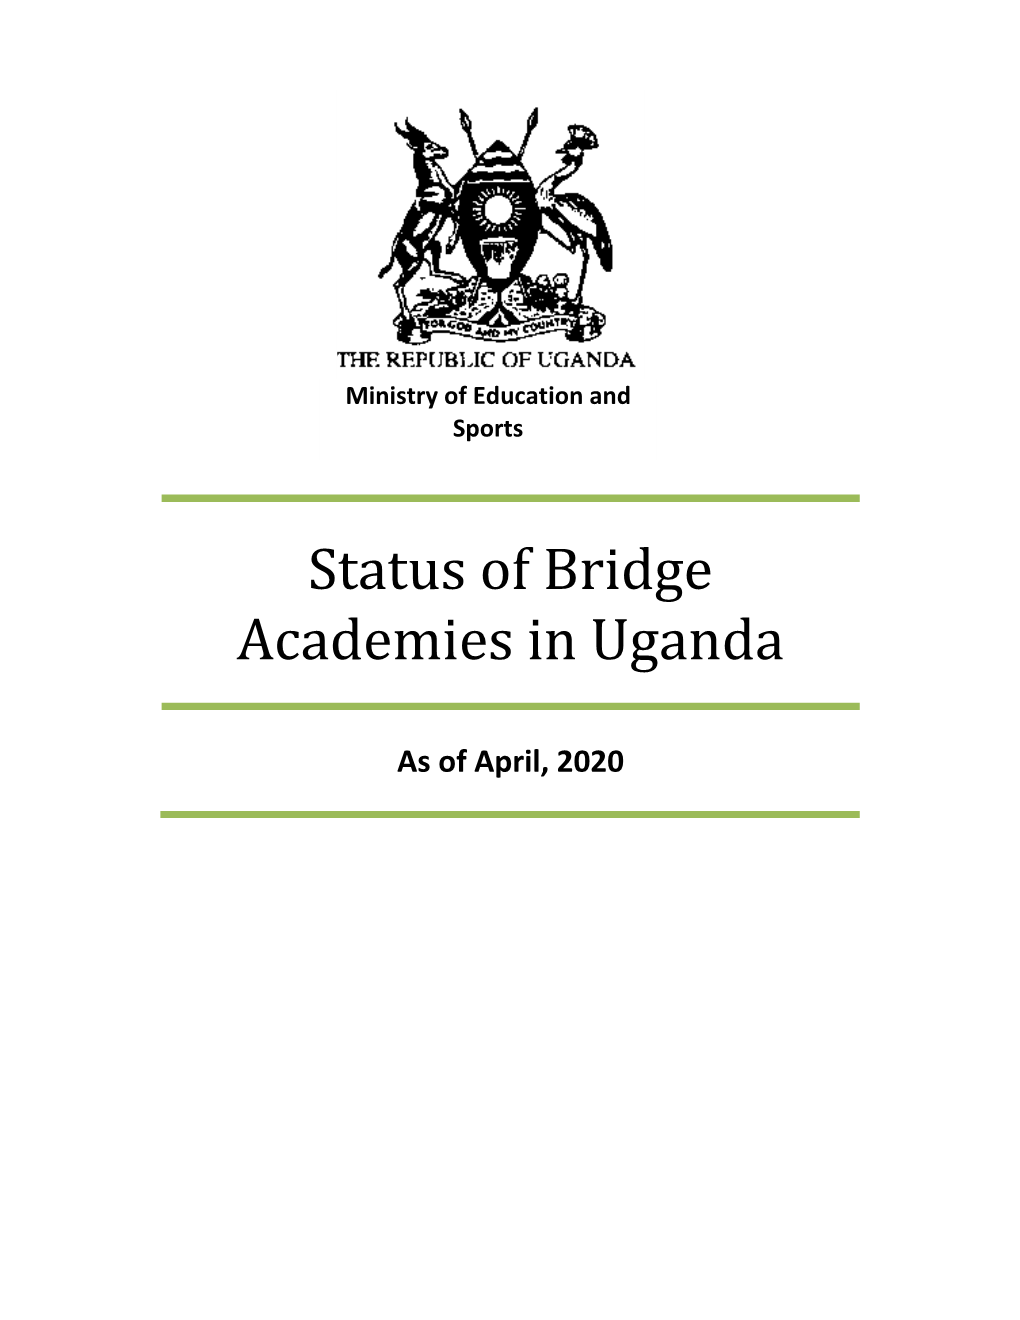 Status of Bridge Academies in Uganda